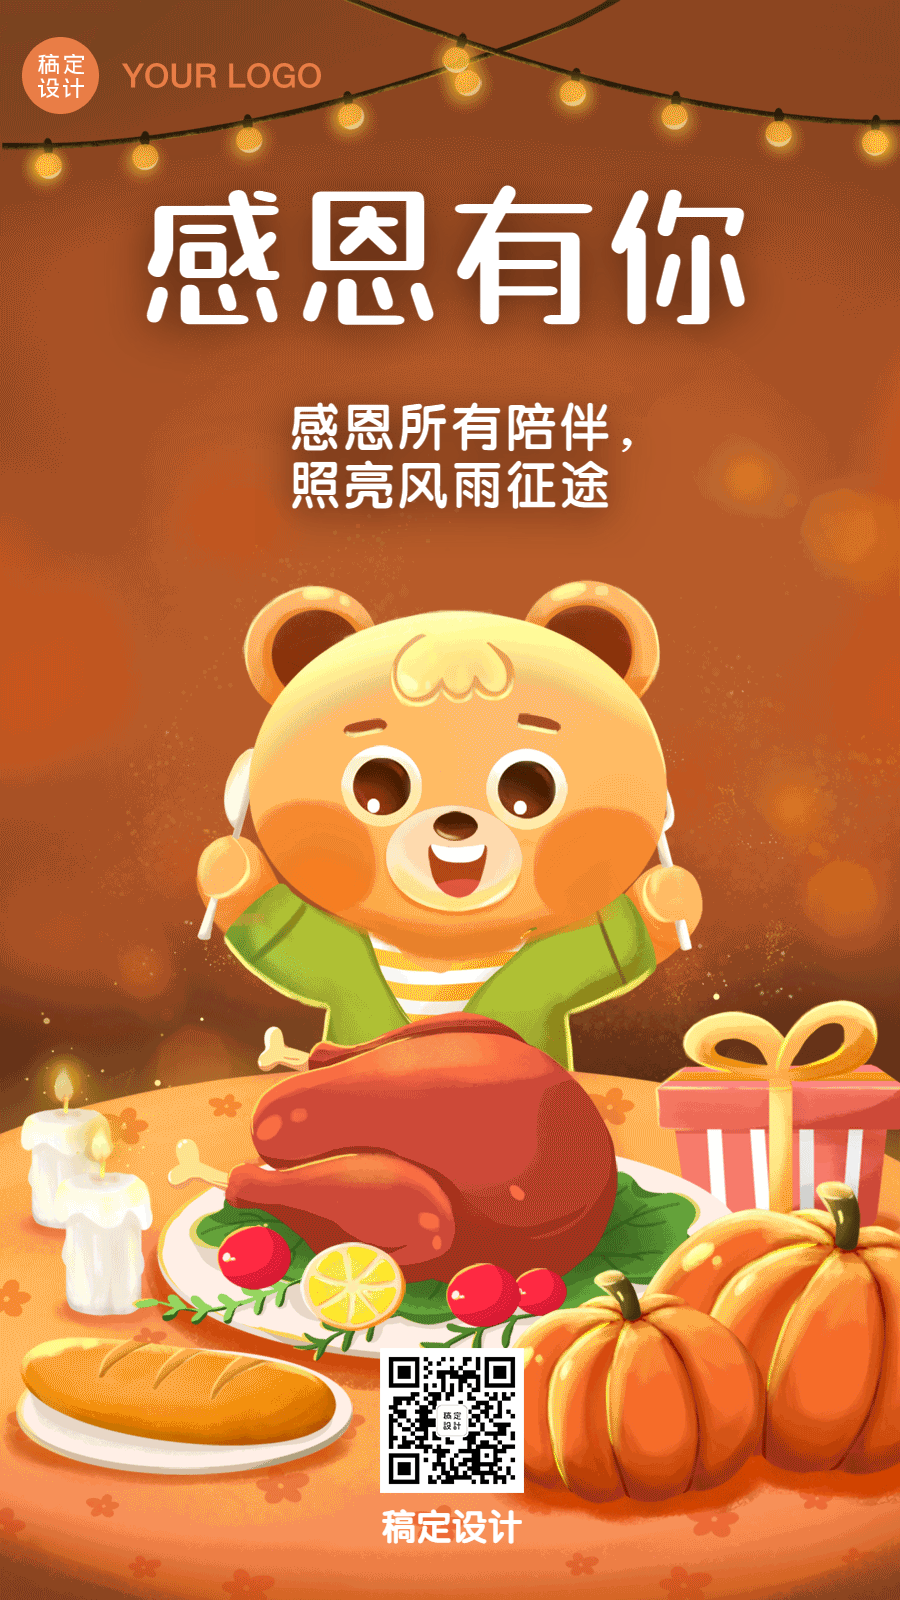 感恩节可爱卡通聚餐插画祝福GIF动态手机海报